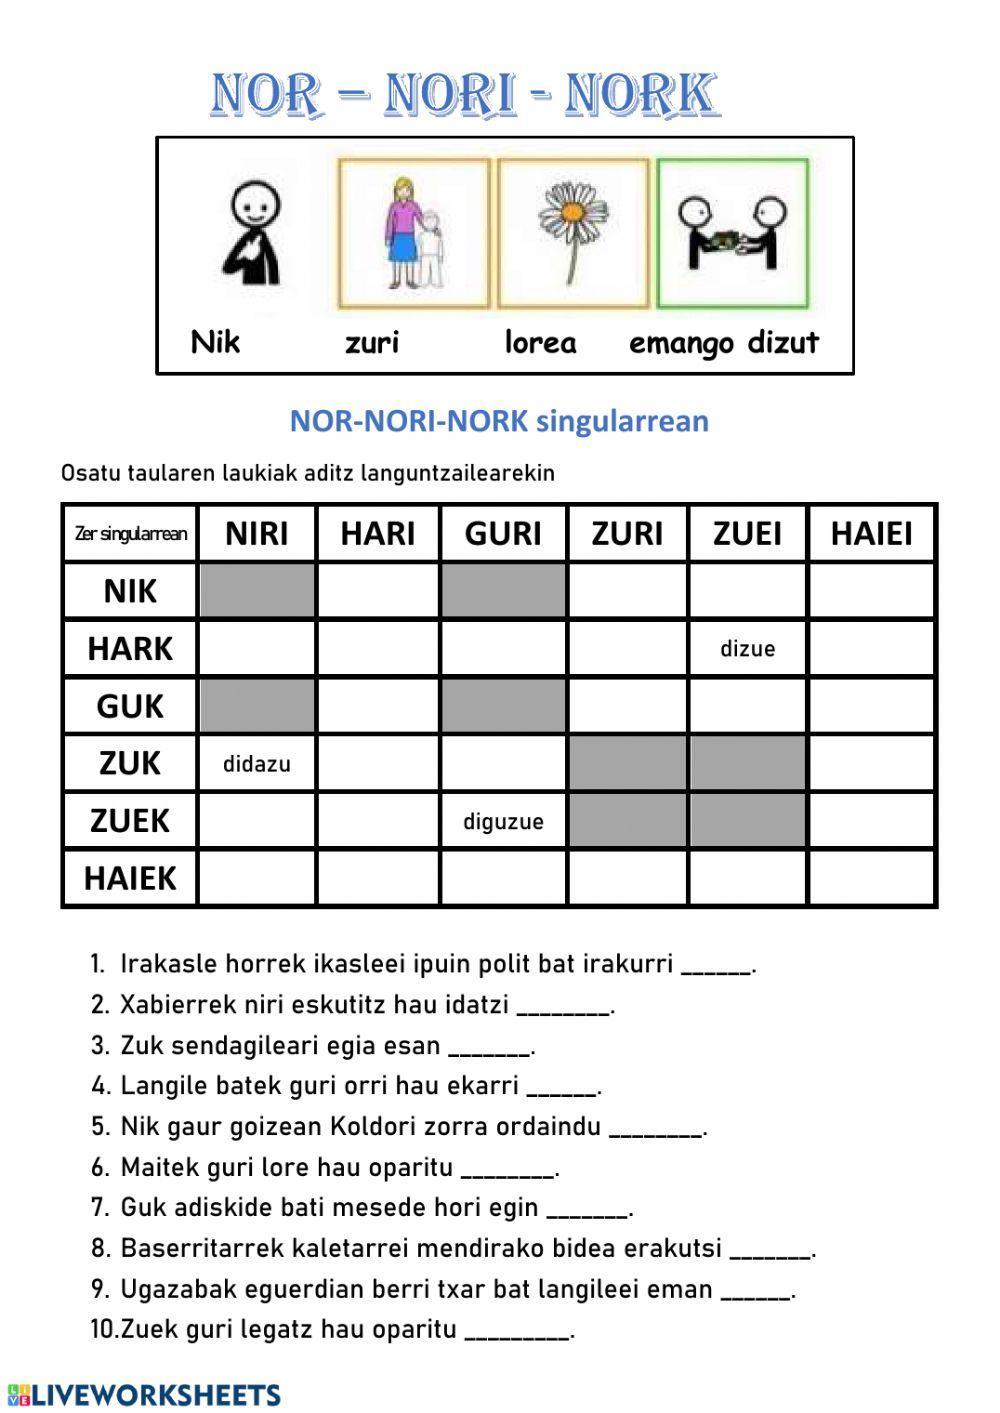 Nor-nori-nork singularrean